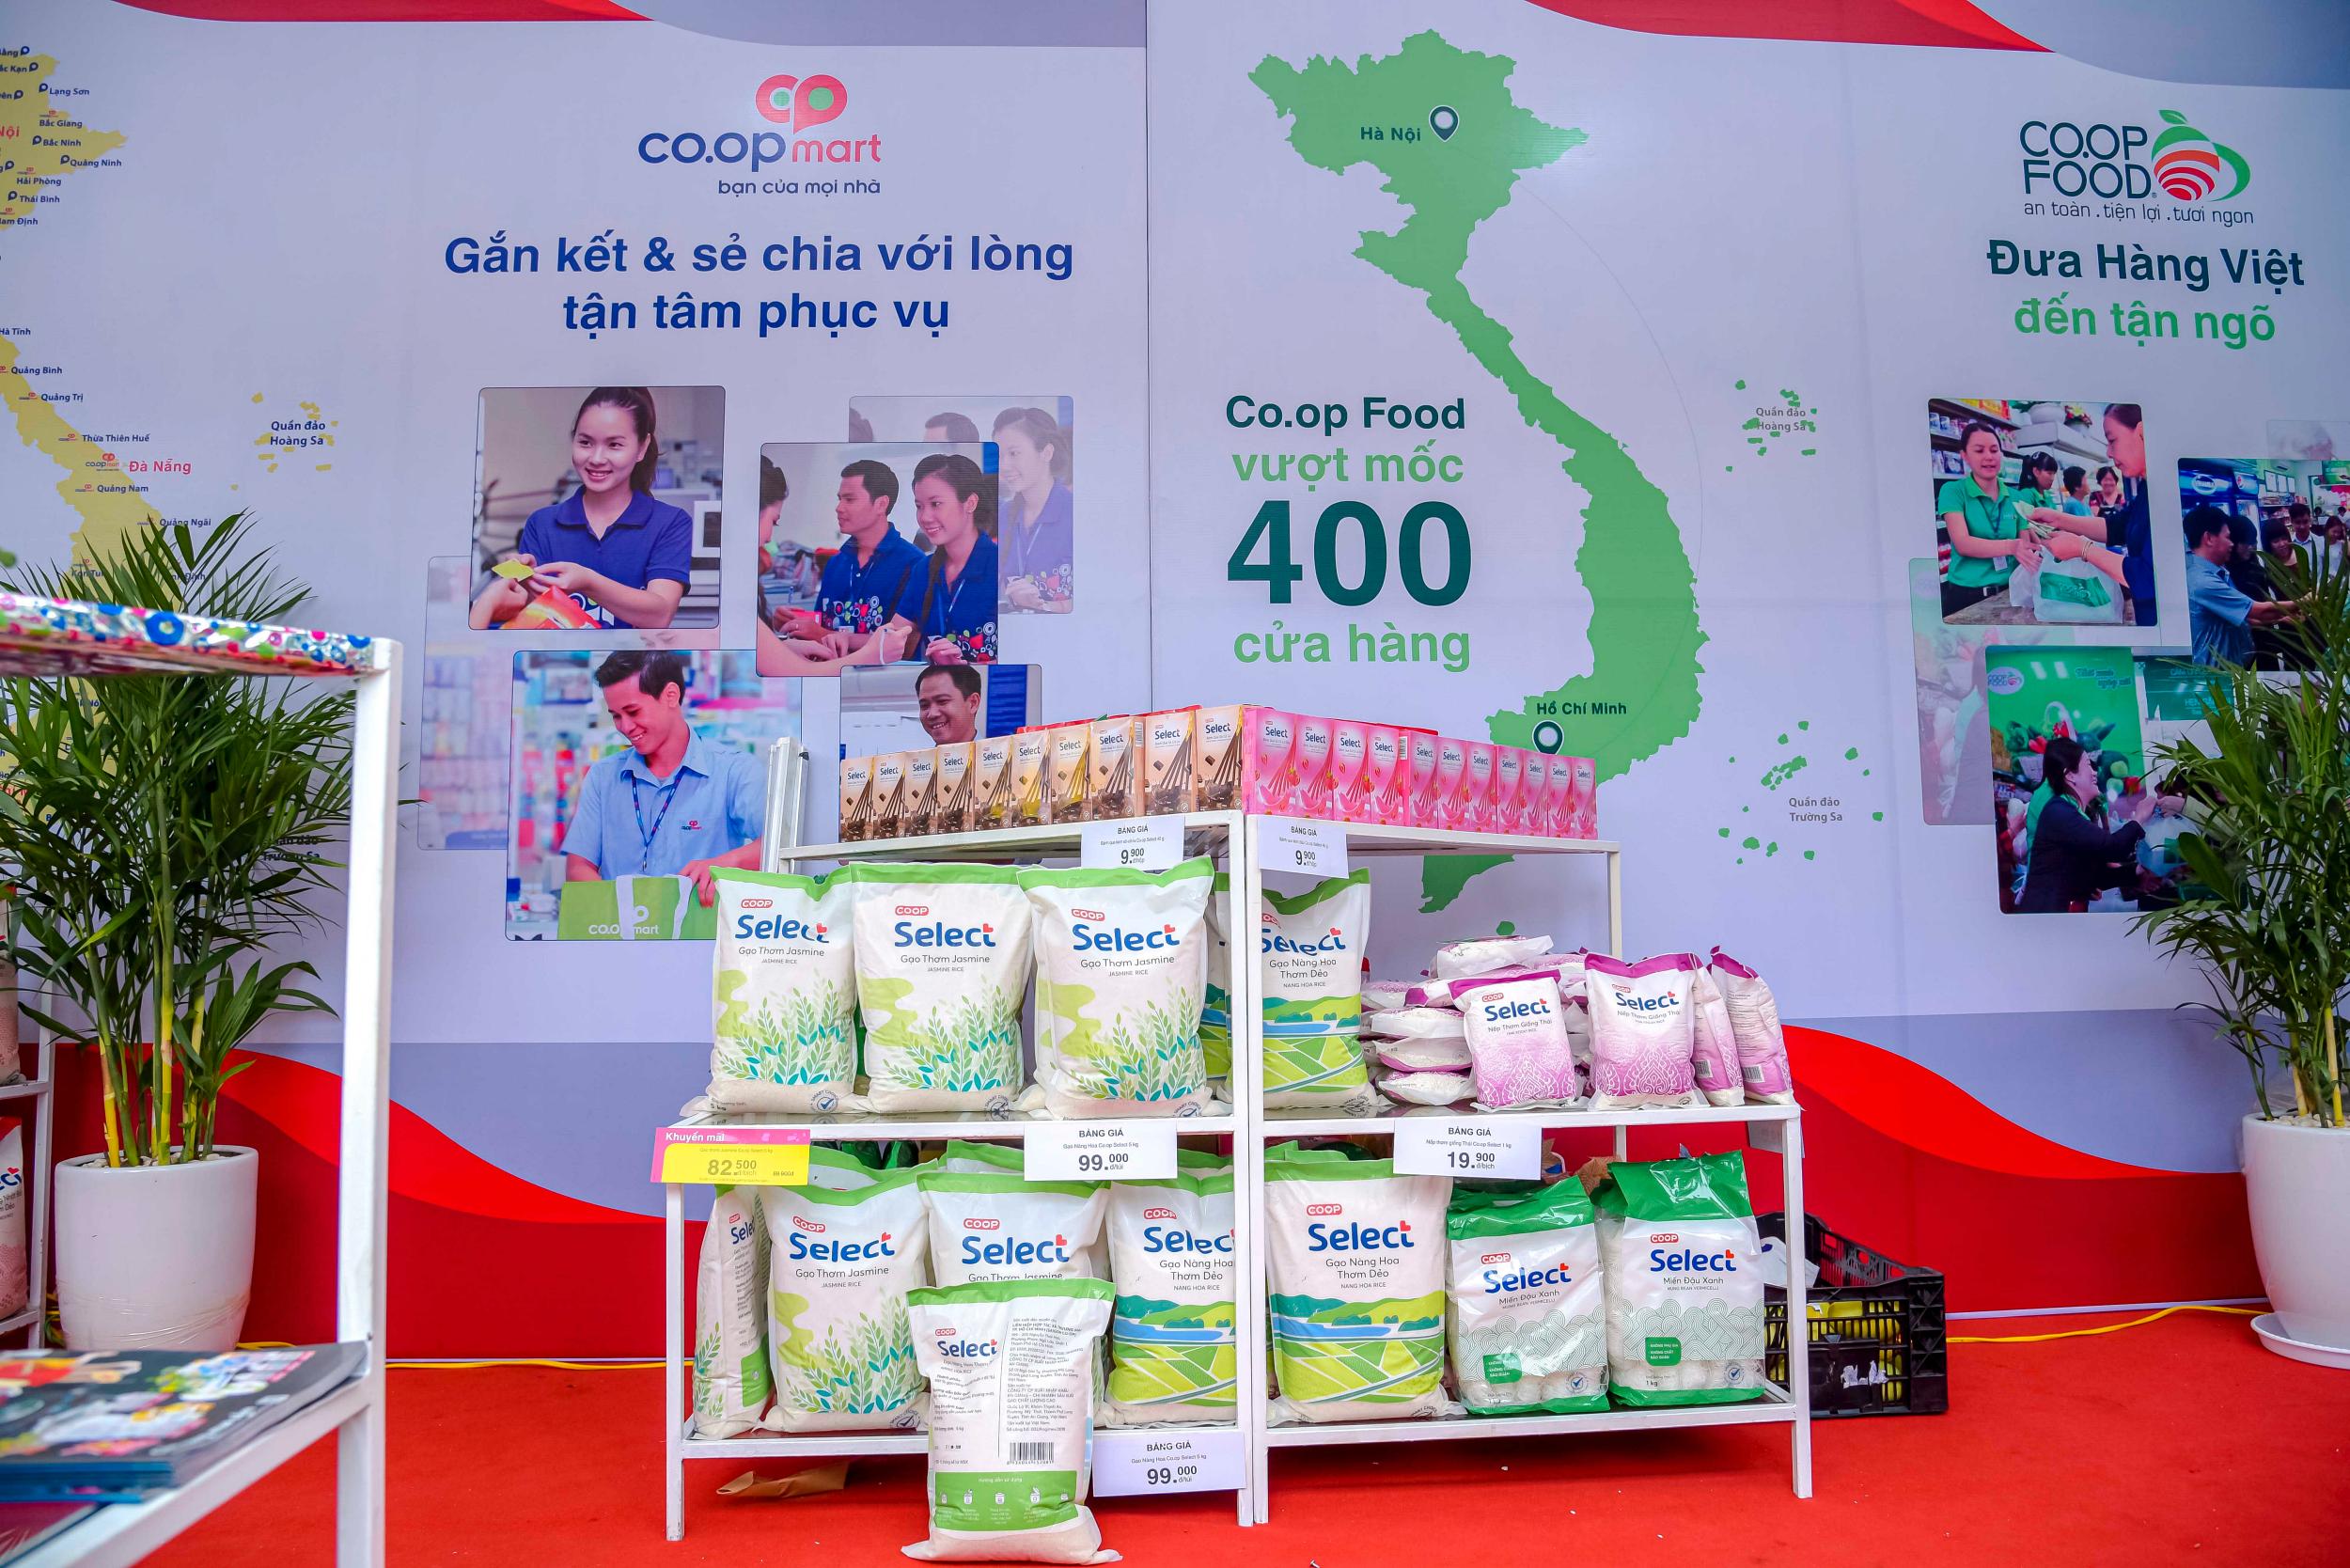 Sản phẩm gạo mang nhãn riêng của Saigon Co.op được người dân Thủ đô ưa chuộng